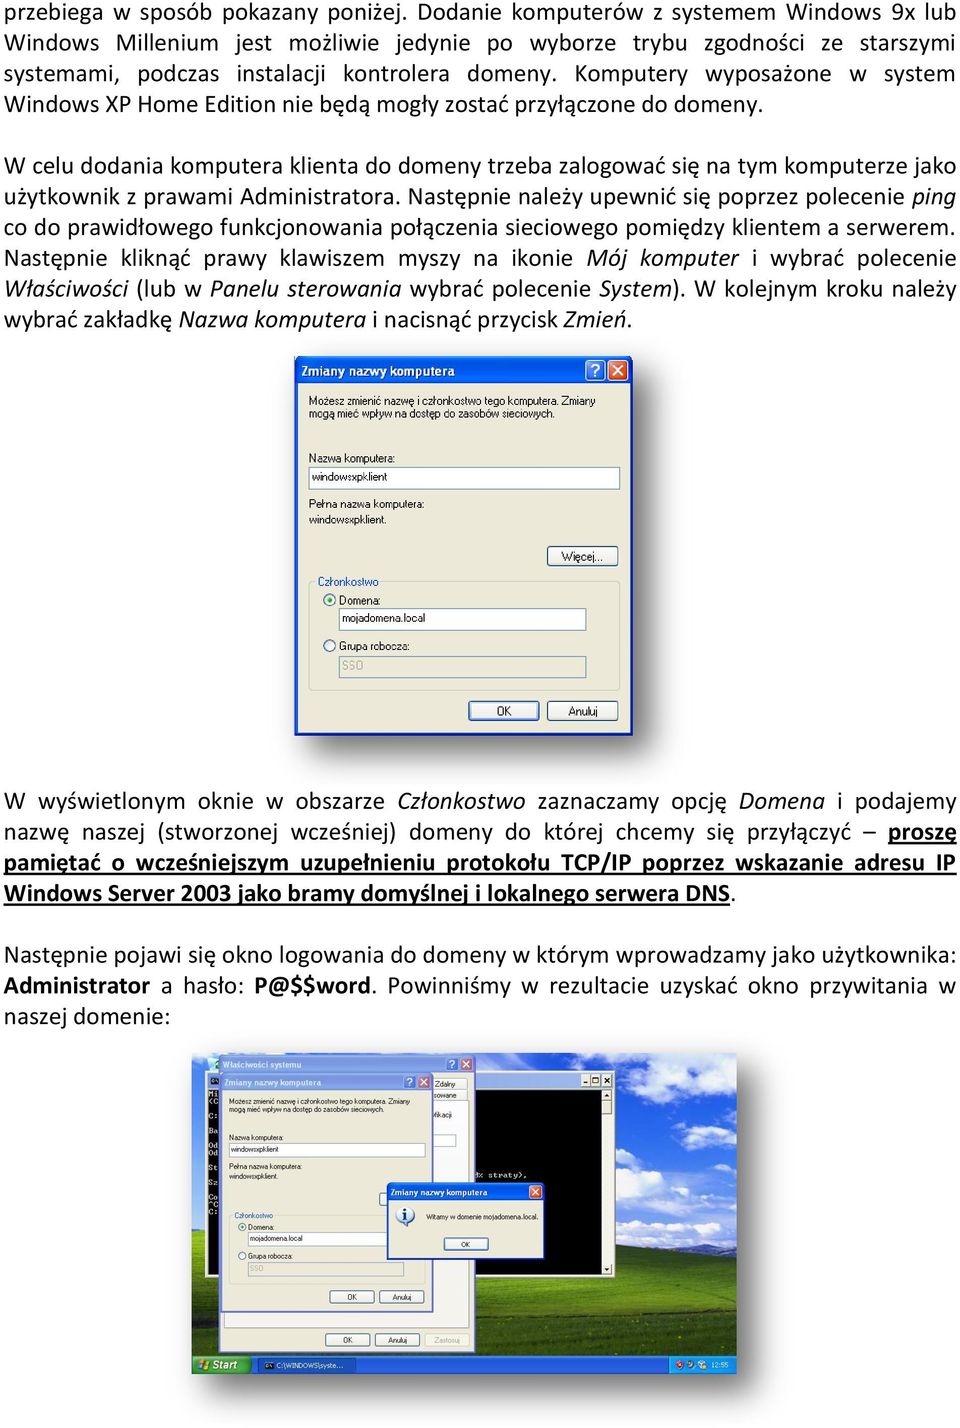 Komputery wyposażone w system Windows XP Home Edition nie będą mogły zostad przyłączone do domeny.